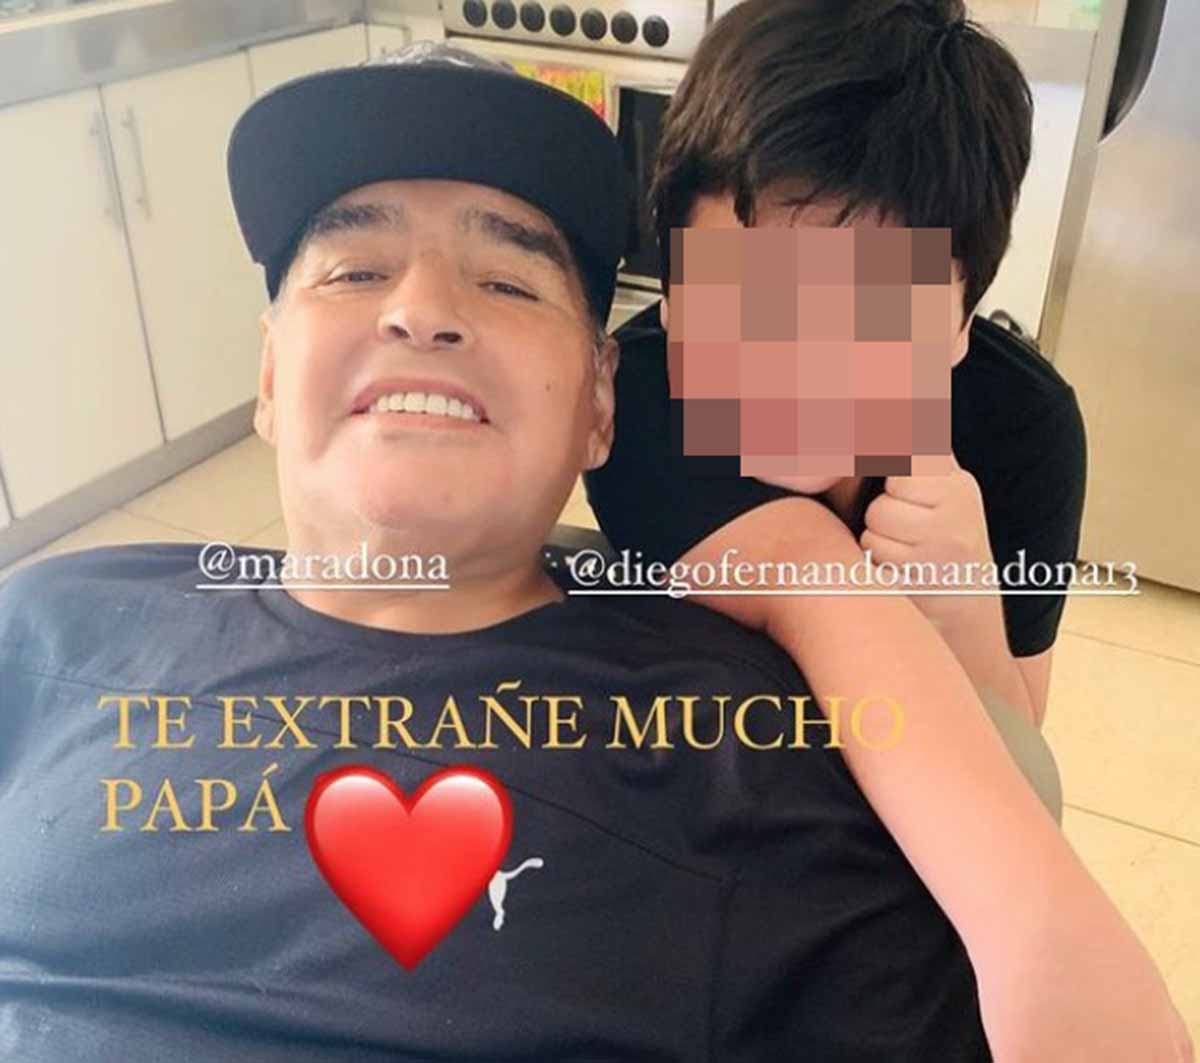 La complicada historia familiar de Maradona: cinco hijos reconocidos y otros ilegítimos